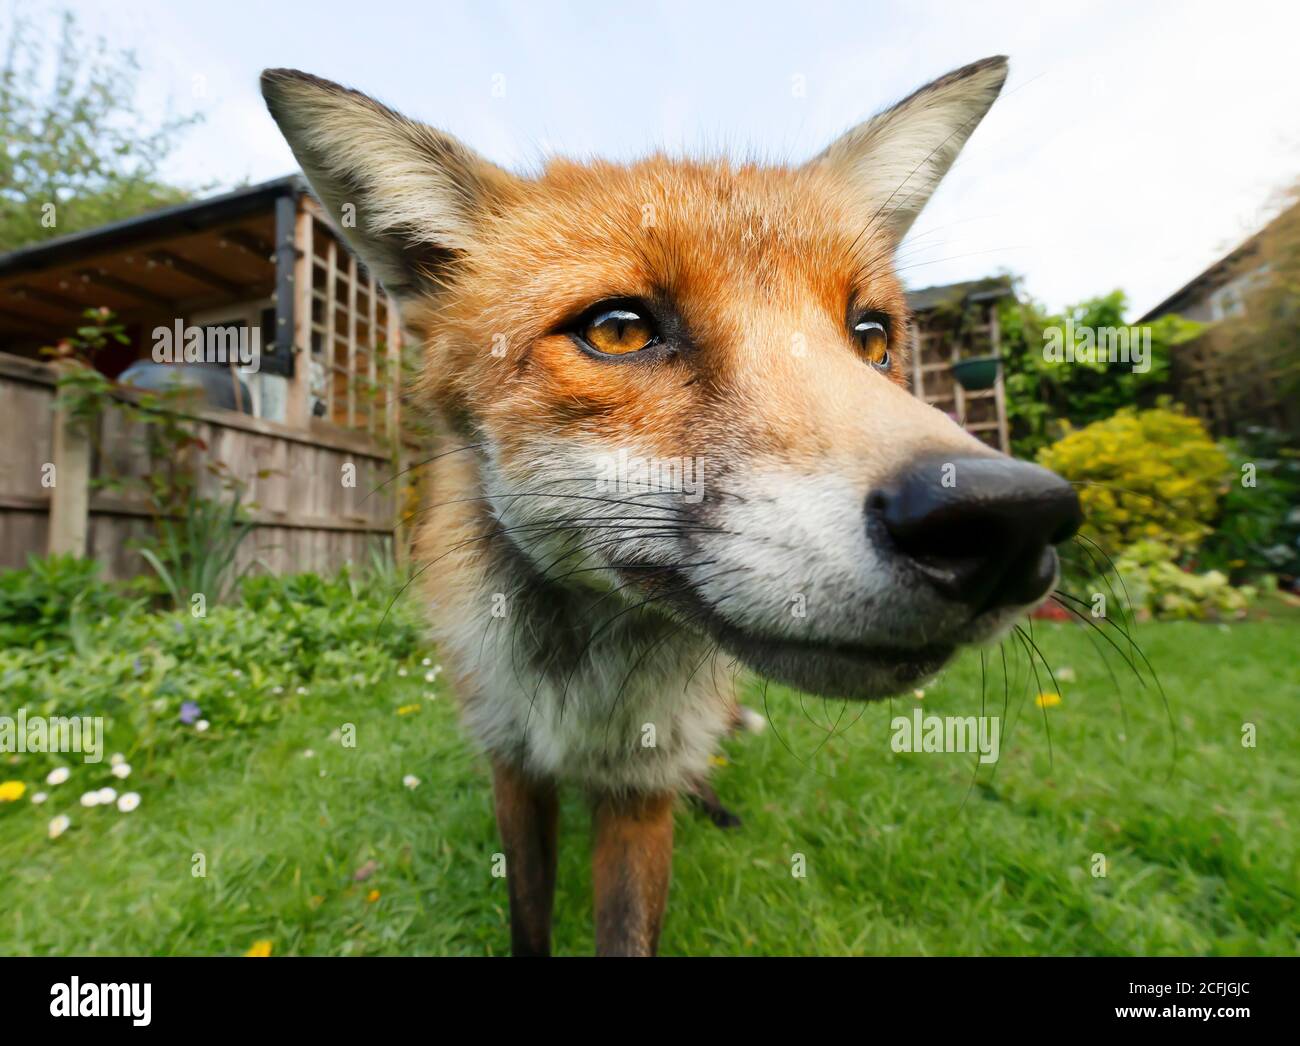 Portrait d'un renard roux (Vulpes vulpes) debout dans le jardin, Royaume-Uni. Banque D'Images